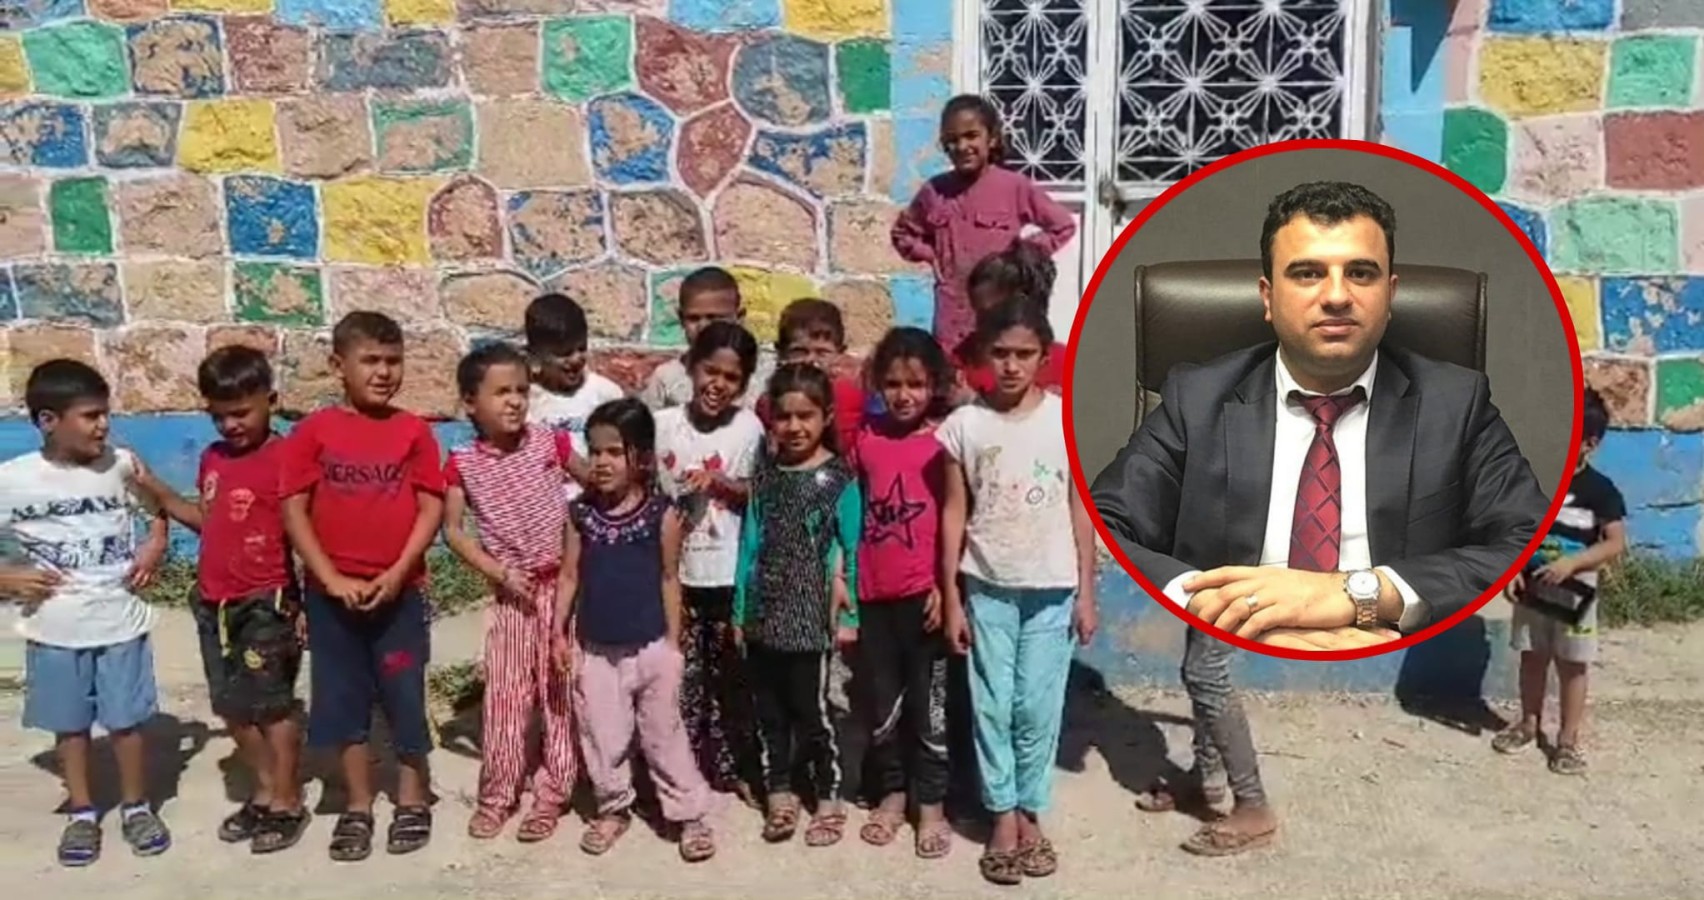 Harran'da “öğretmen olmadığı” gerekçesiyle kapatılan Meclis gündeminde